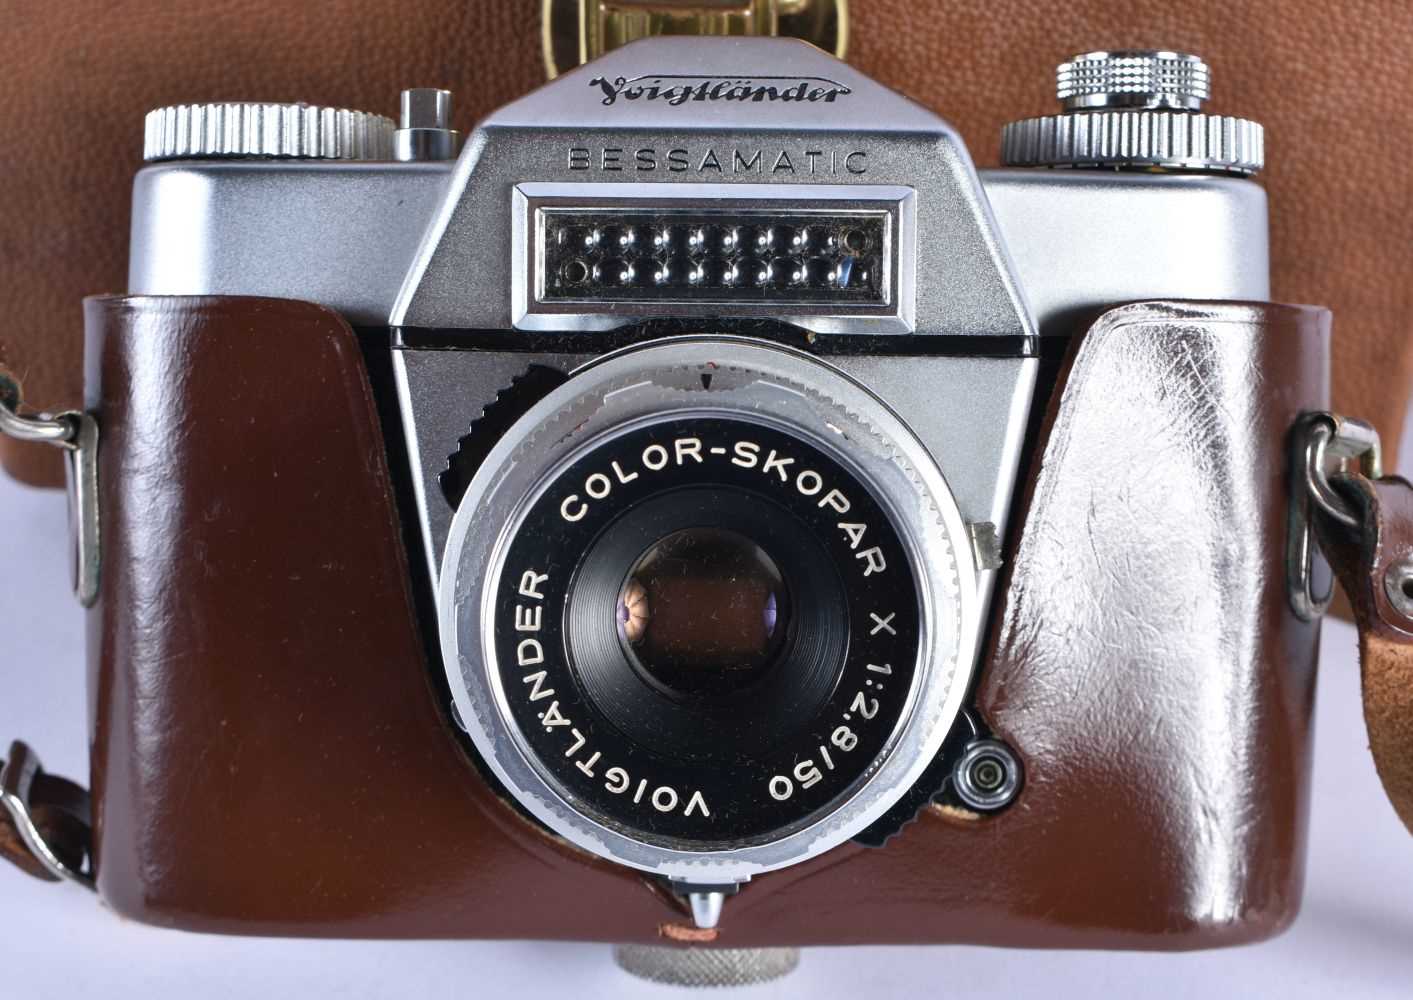 Voigtlander Bessamatic VINTAGE CAMERA w/ Color-Skopar X F/2.8 50mm Lens. 24 cm x 18 cm. - Image 2 of 6